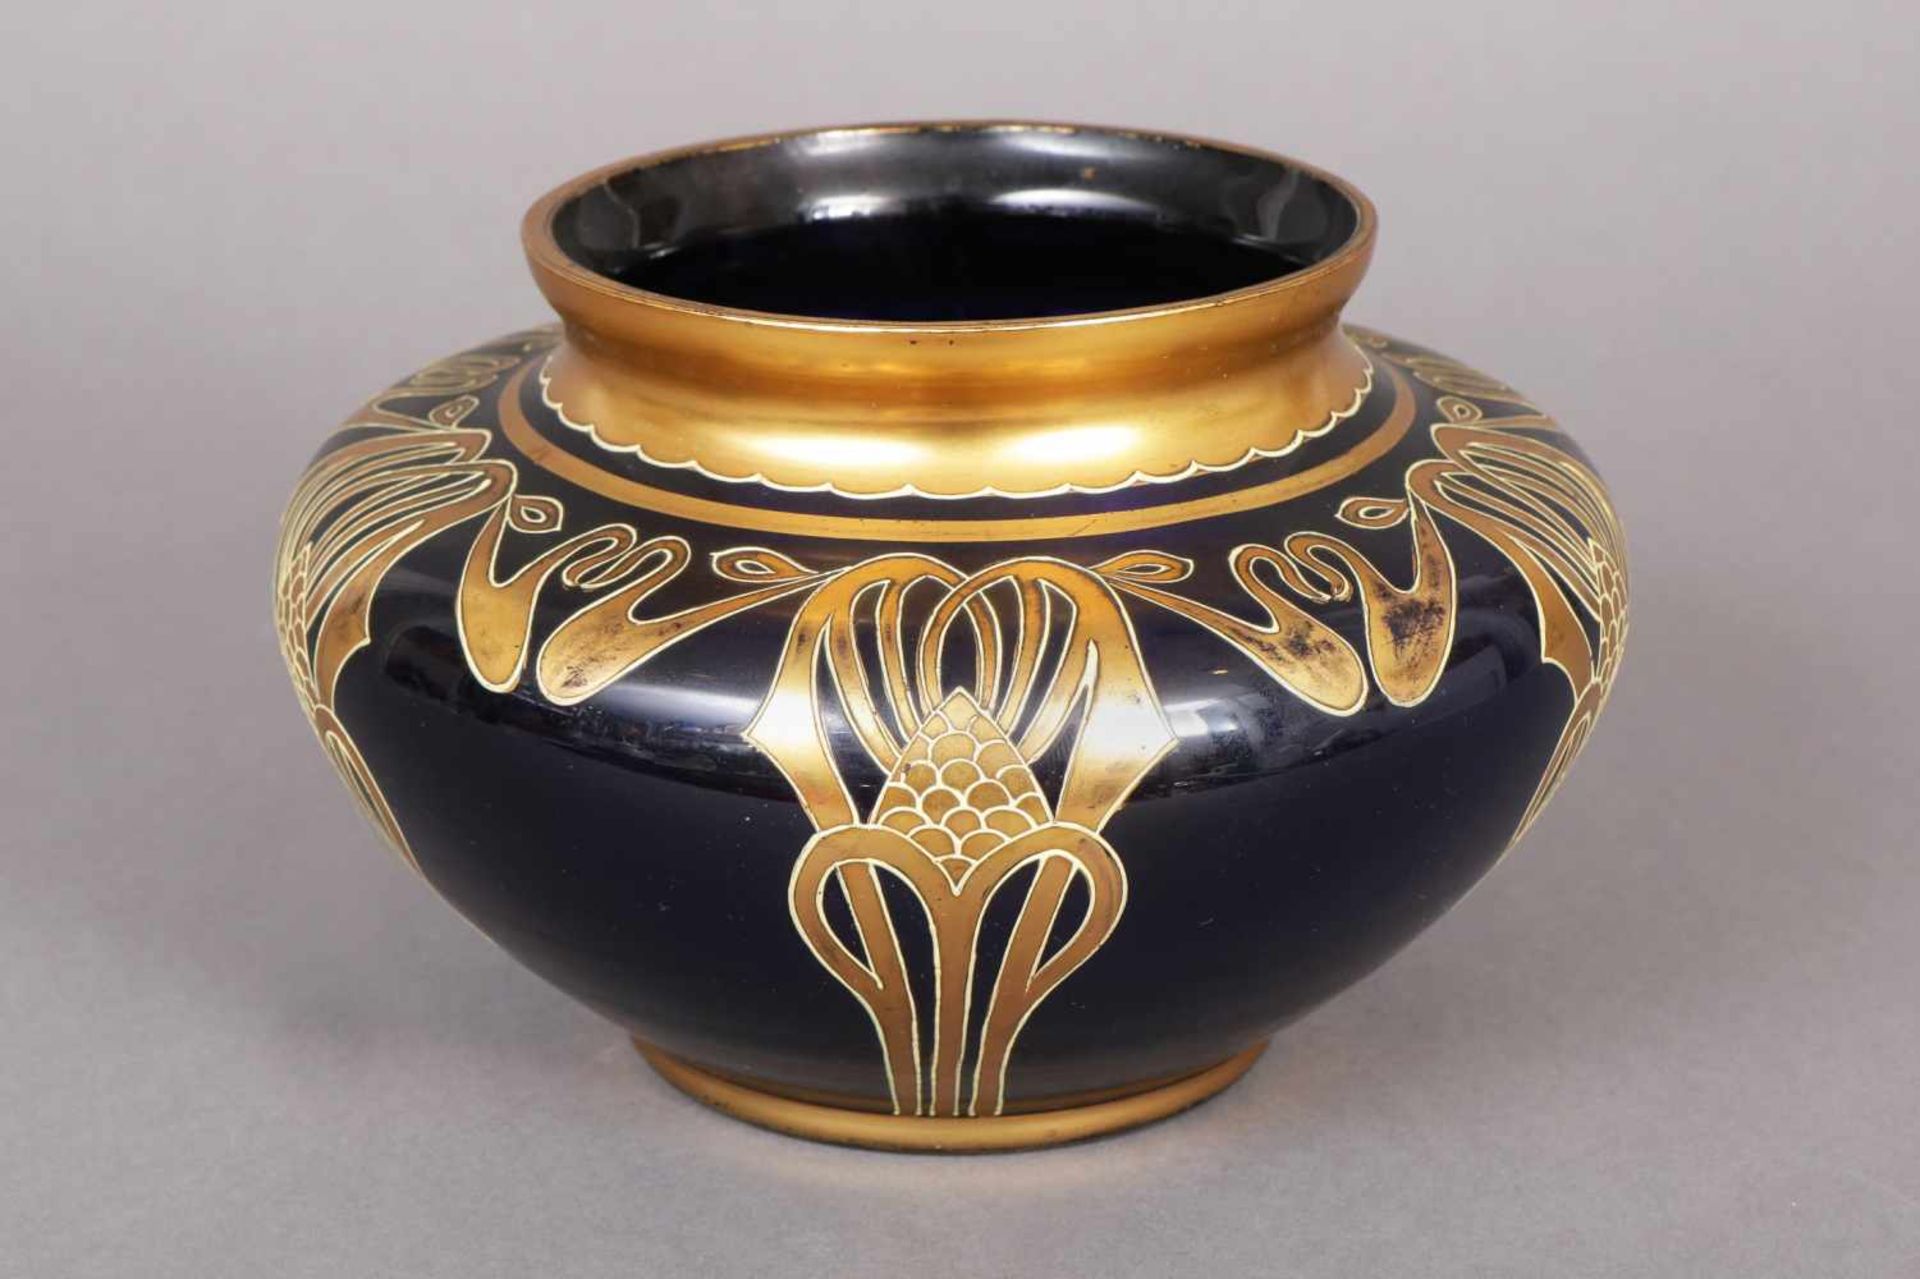 Jugendstil Vase wohl POSCHINGER, um 1920, blaues Glas mit goldenem Rankendekor, hochbauchige Form